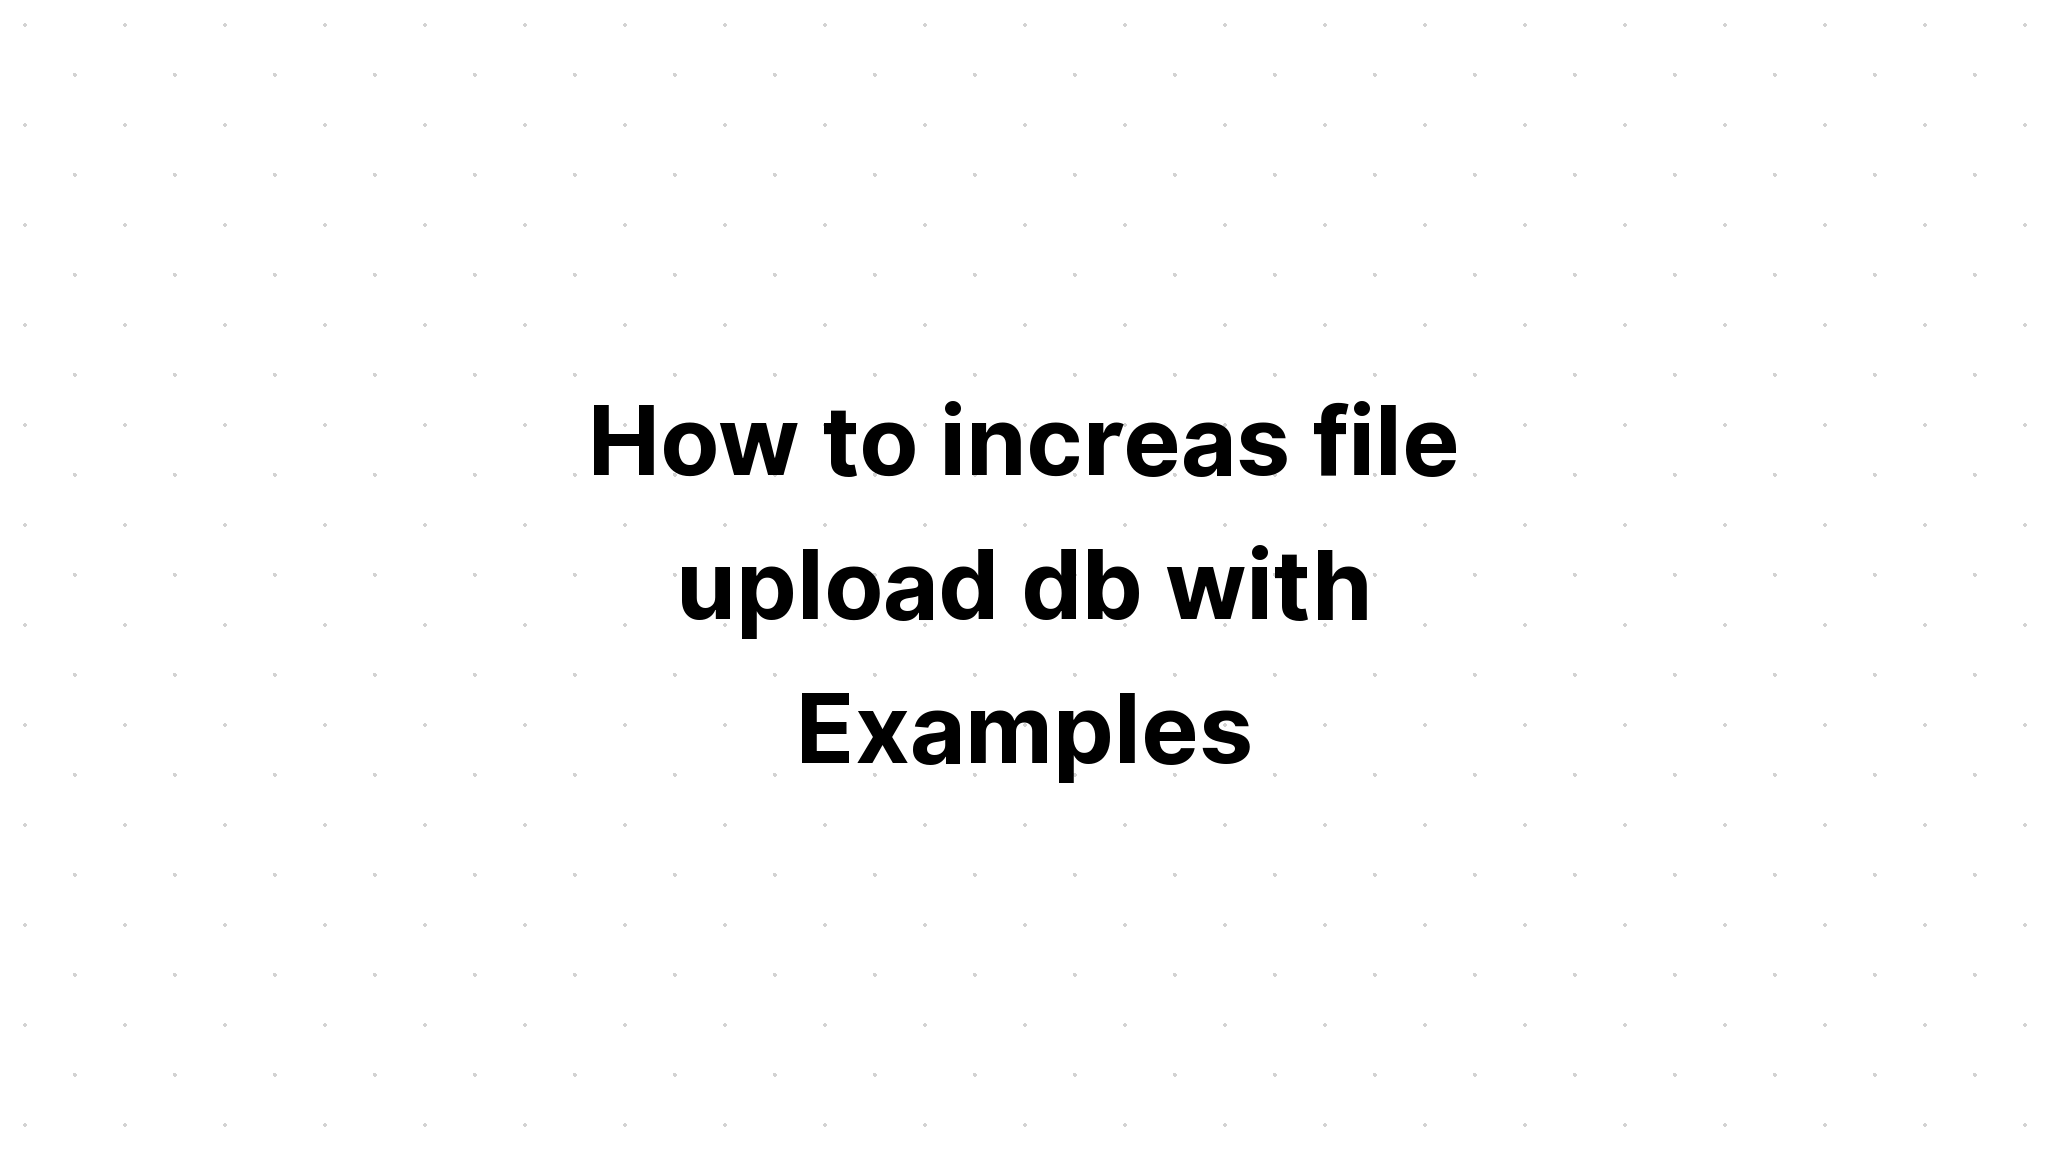 Cara memperbesar upload file db dengan Contoh